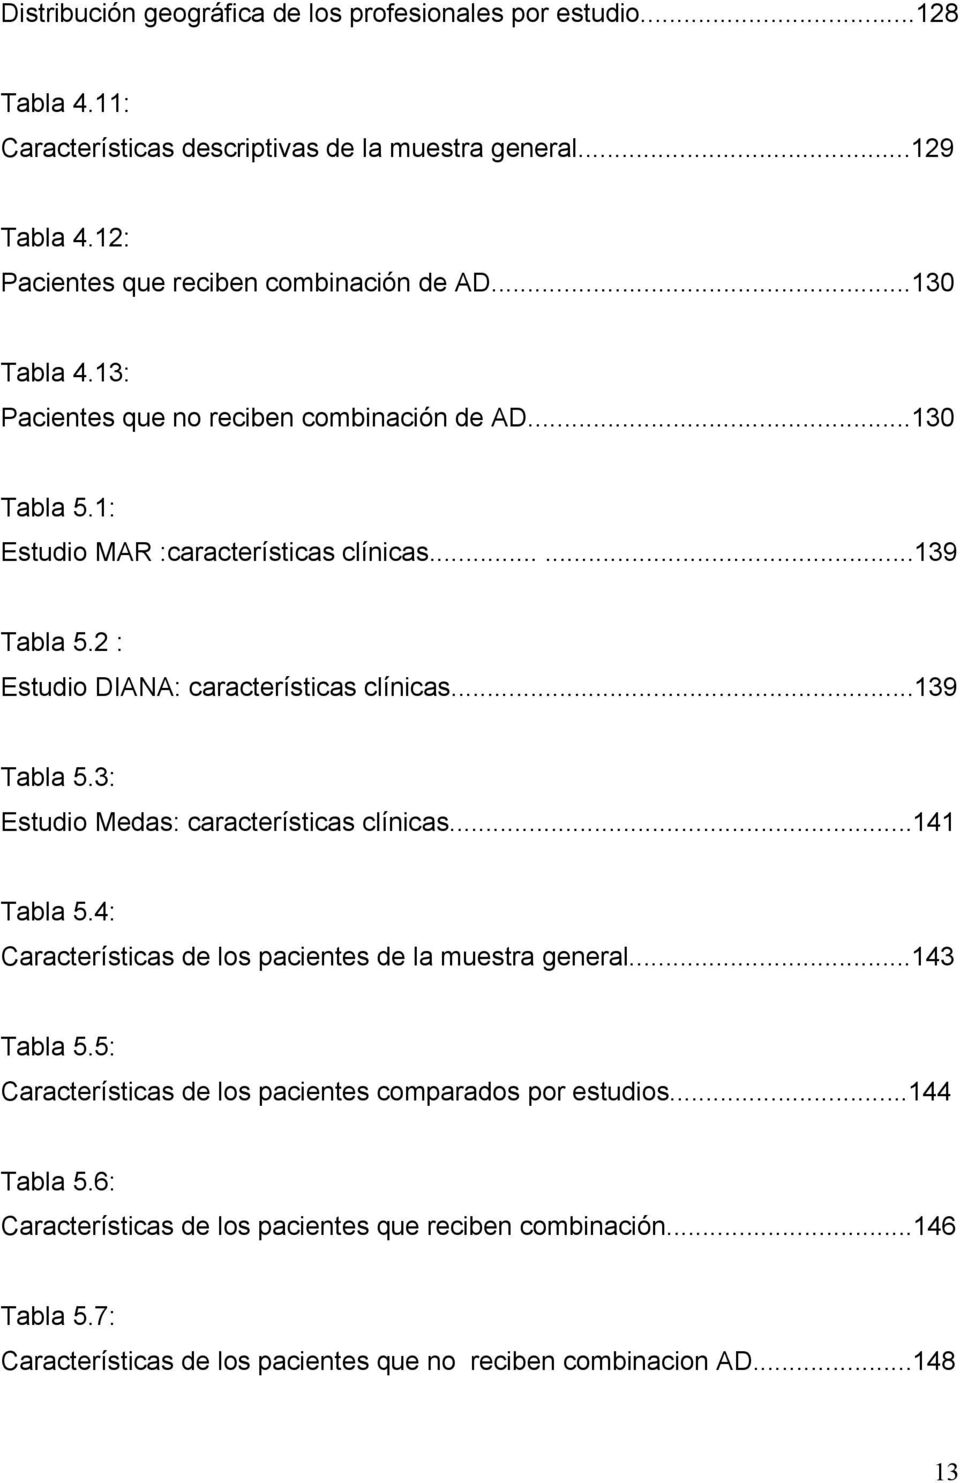 2 : Estudio DIANA: características clínicas...139 Tabla 5.3: Estudio Medas: características clínicas...141 Tabla 5.4: Características de los pacientes de la muestra general.